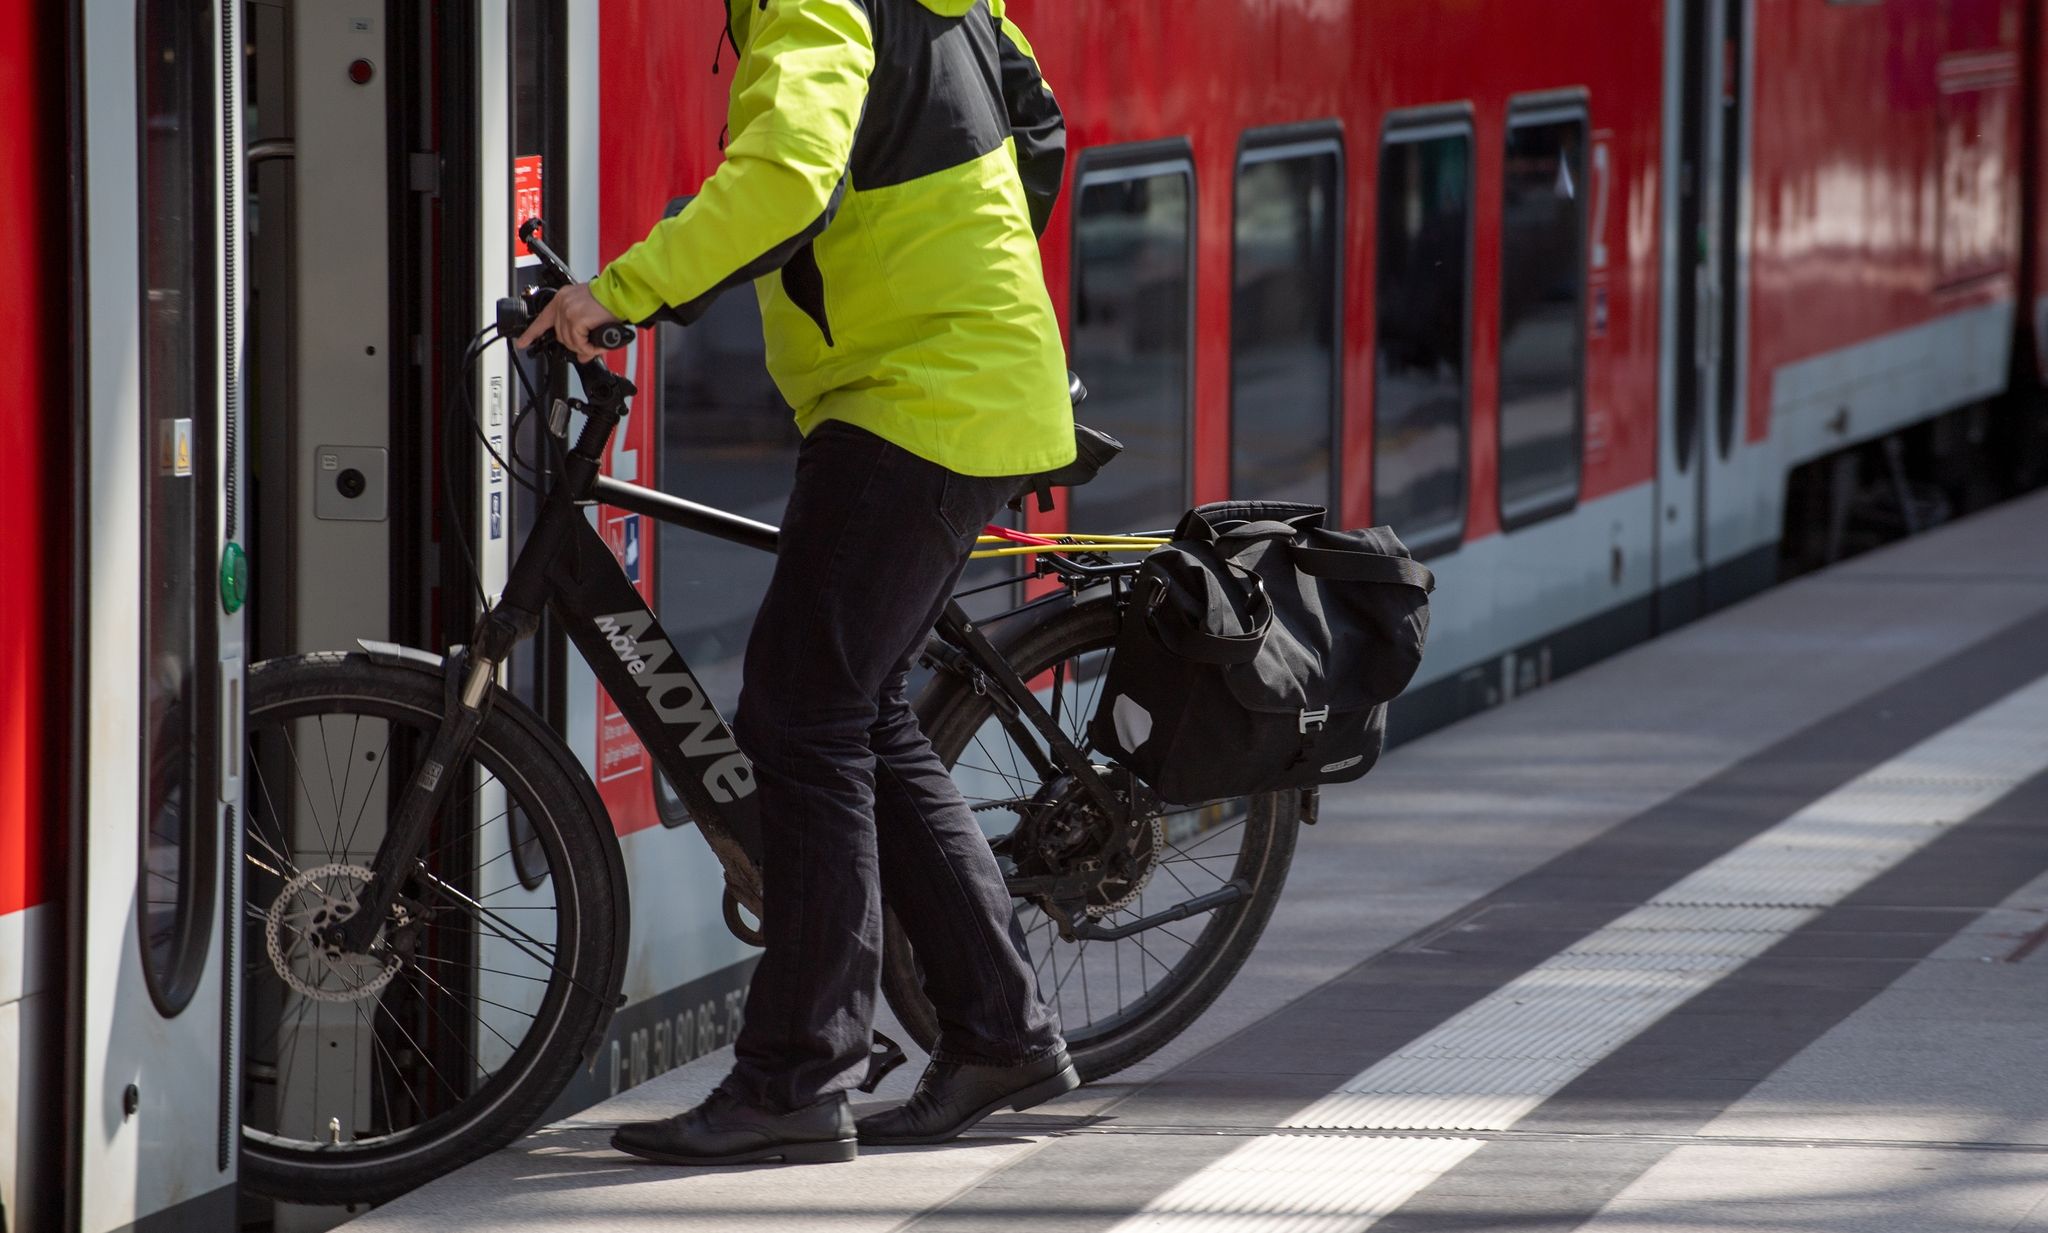 Um ein reibungsloses und schnelles Ein- und Aussteigen zu gewährleisten, sollten sich Fahrgäste mit Fahrrädern auf mehrere Fahrradabteile auf dem Bahnsteig verteilen.